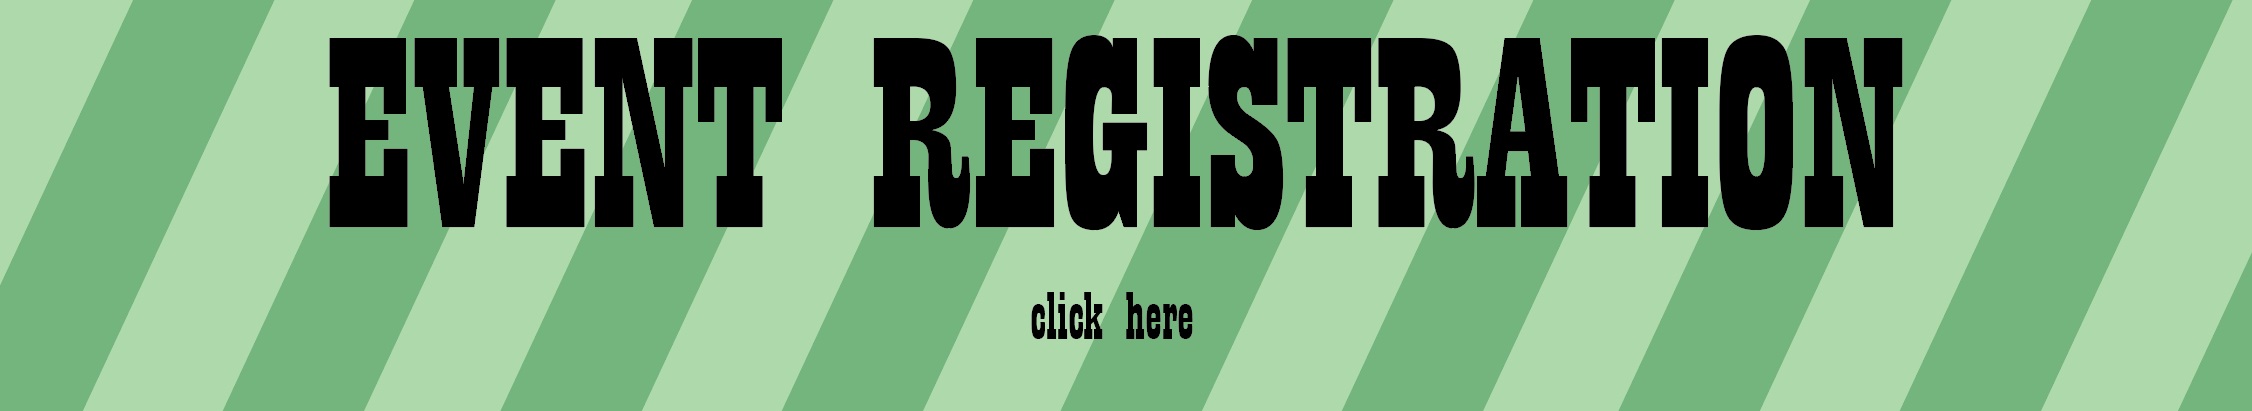 Event Registration Button